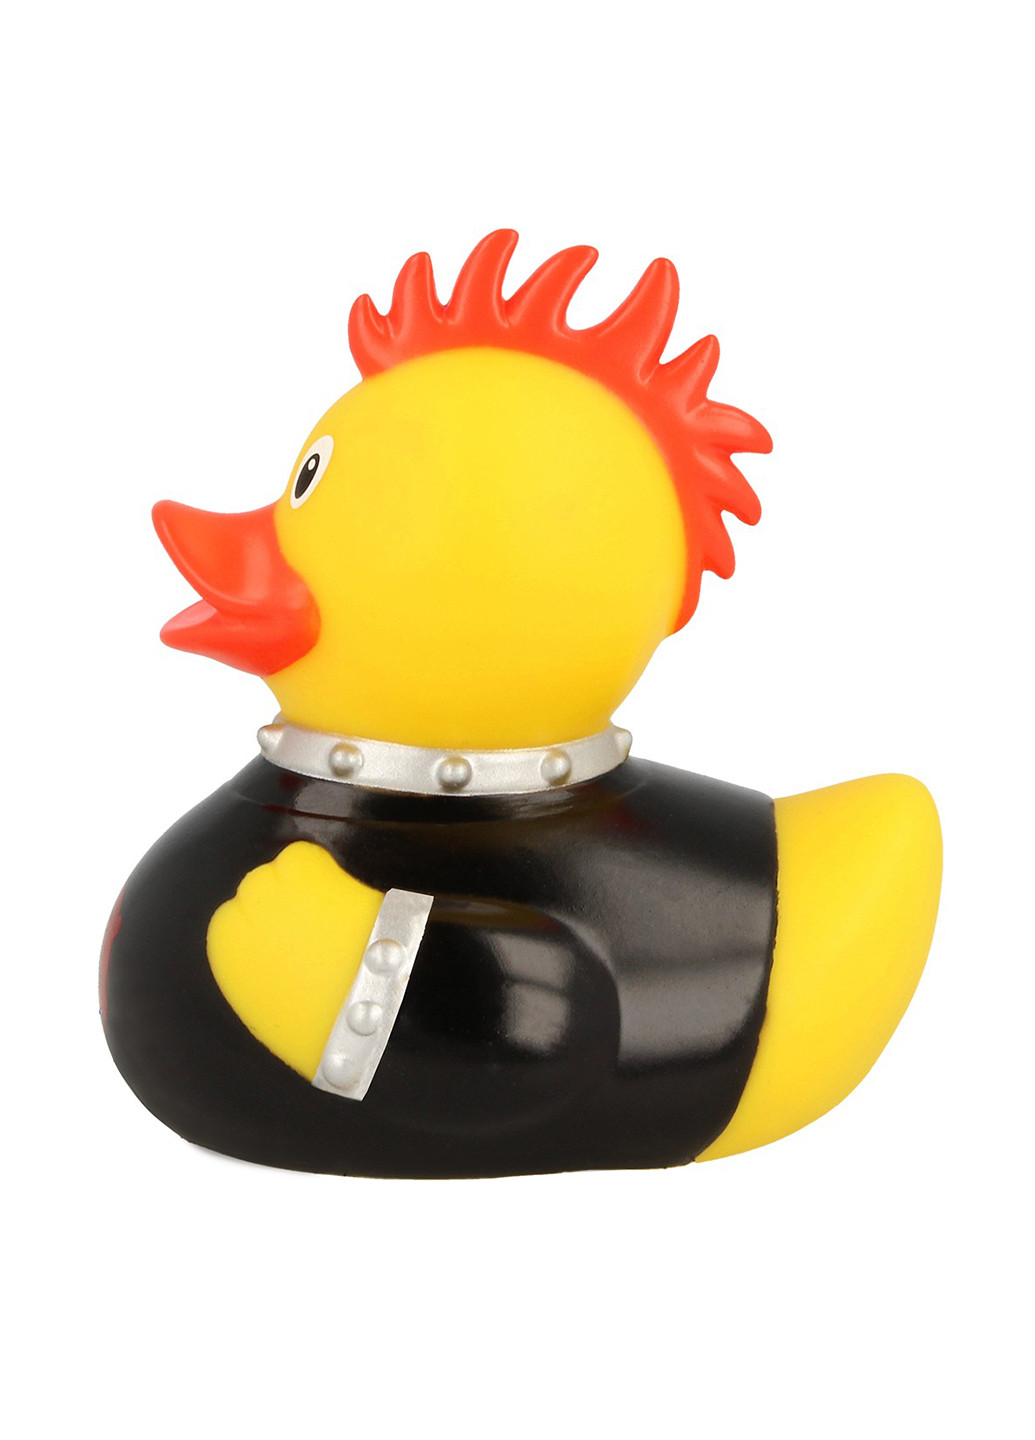 Игрушка для купания Утка Панк, 8,5x8,5x7,5 см Funny Ducks (250618834)